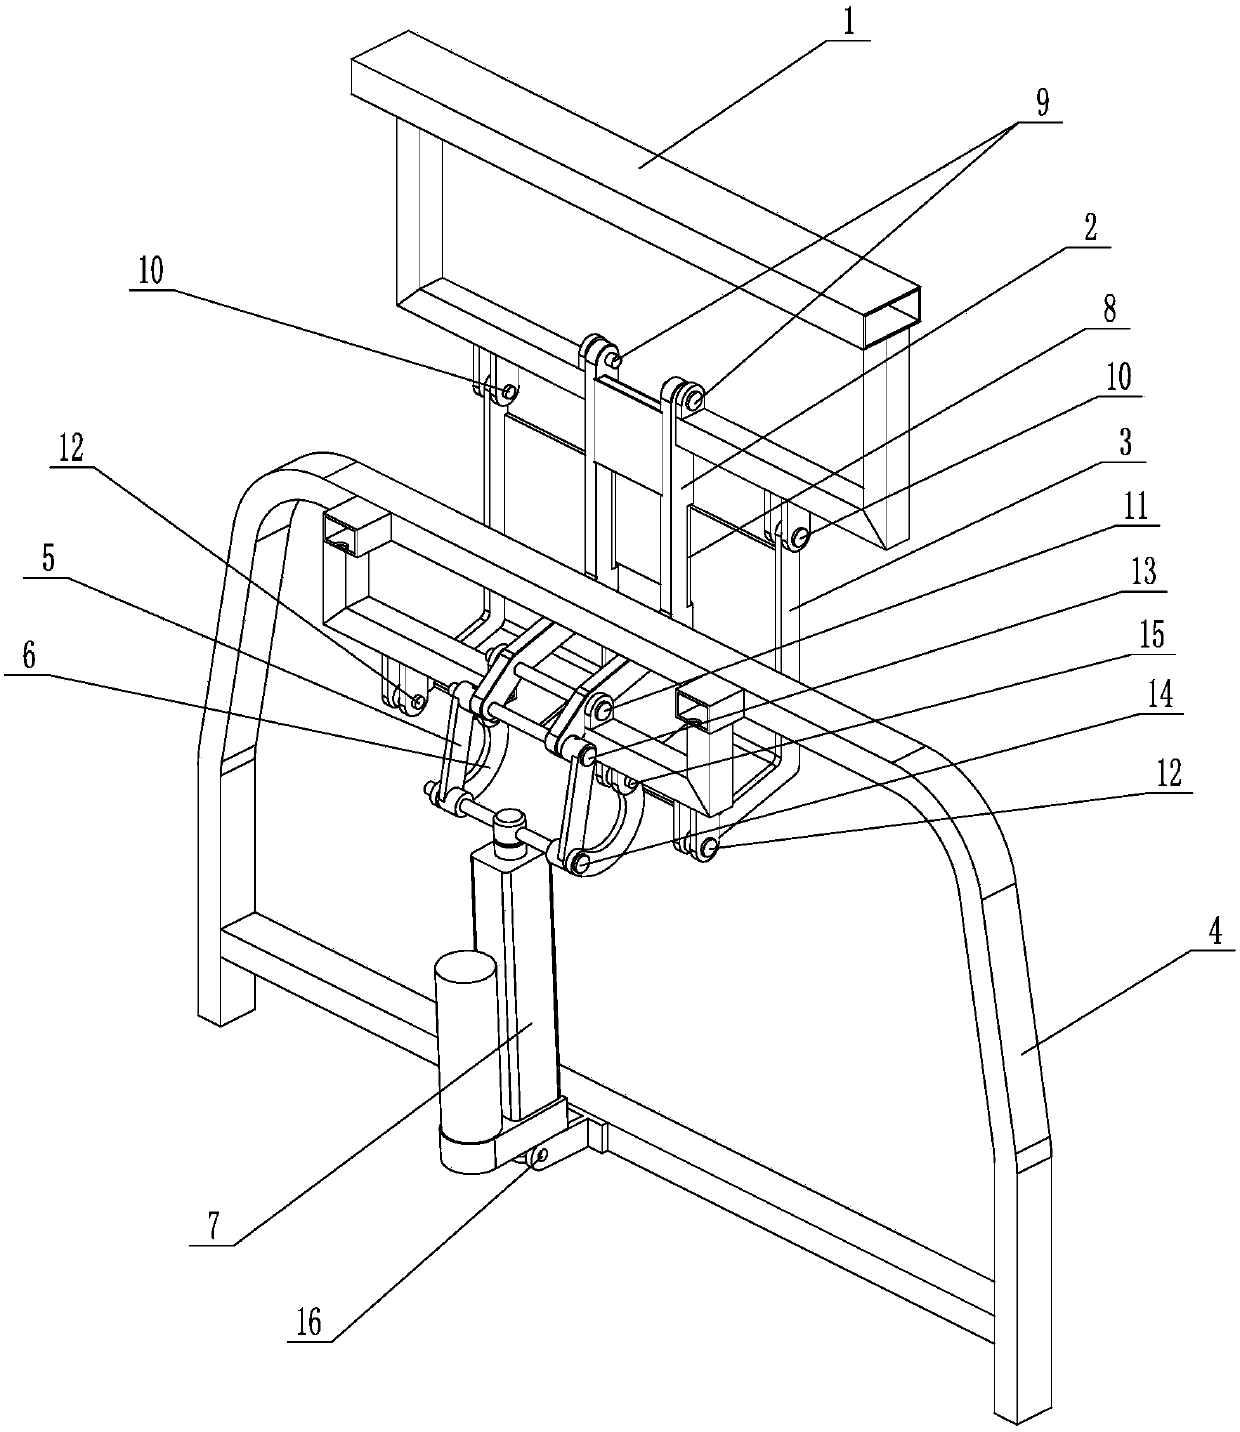 Electric lift armrest structure